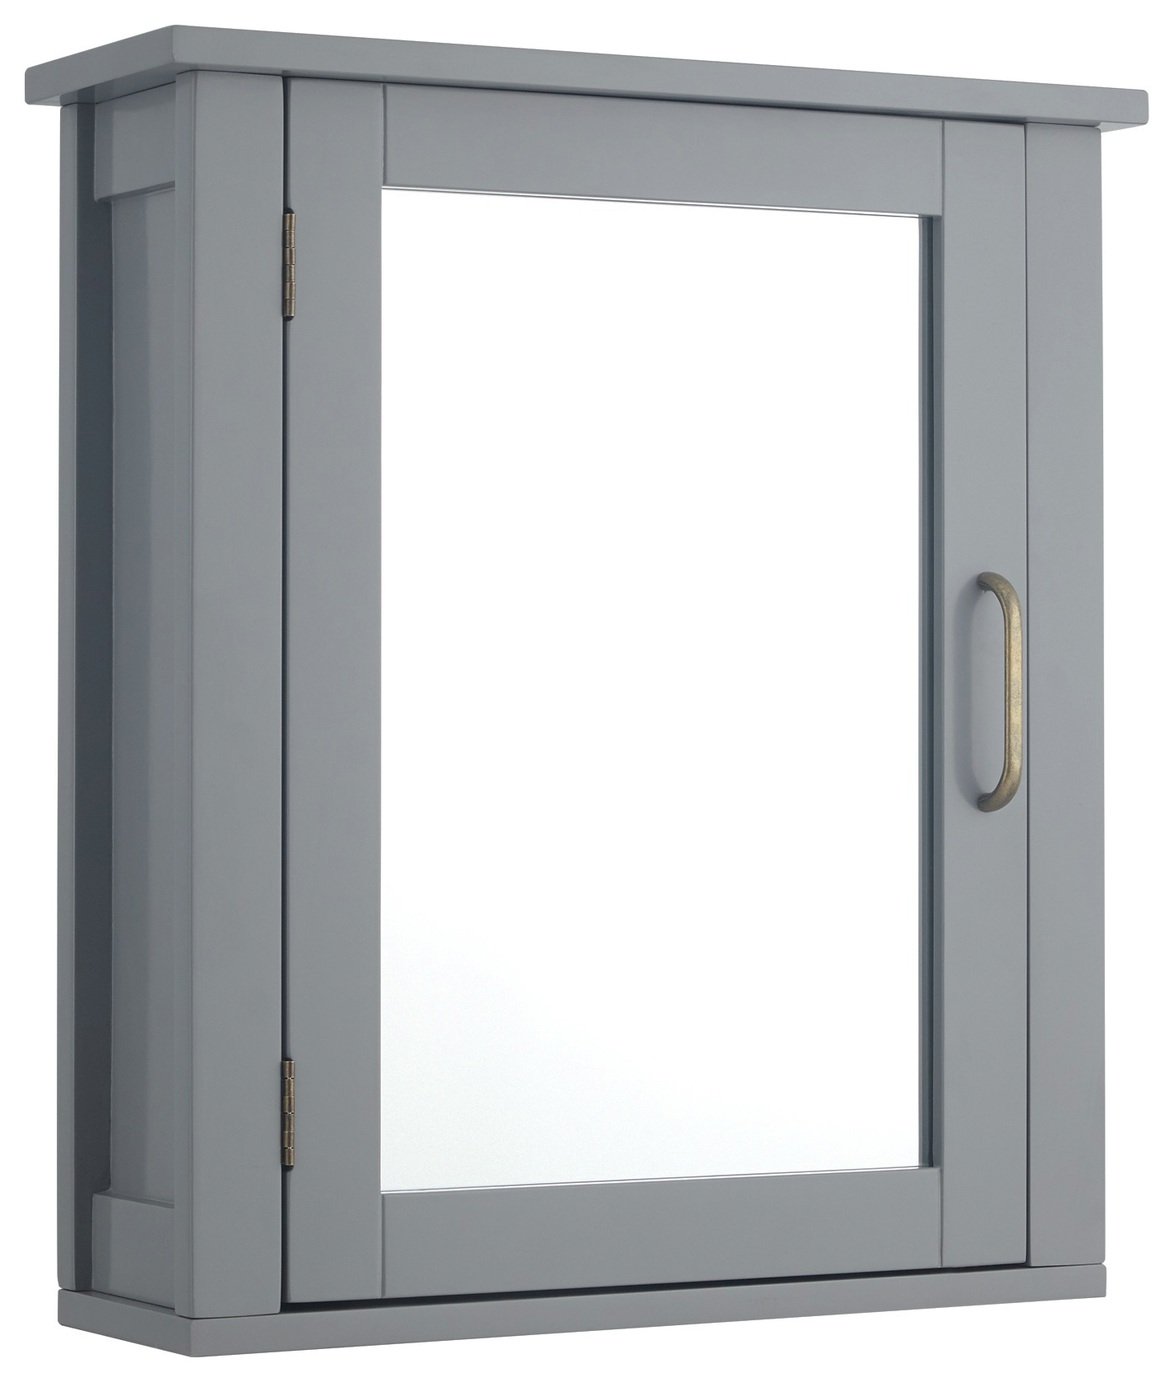 Teamson Home Mercer 1 Door Mirrored Cabinet - Grey